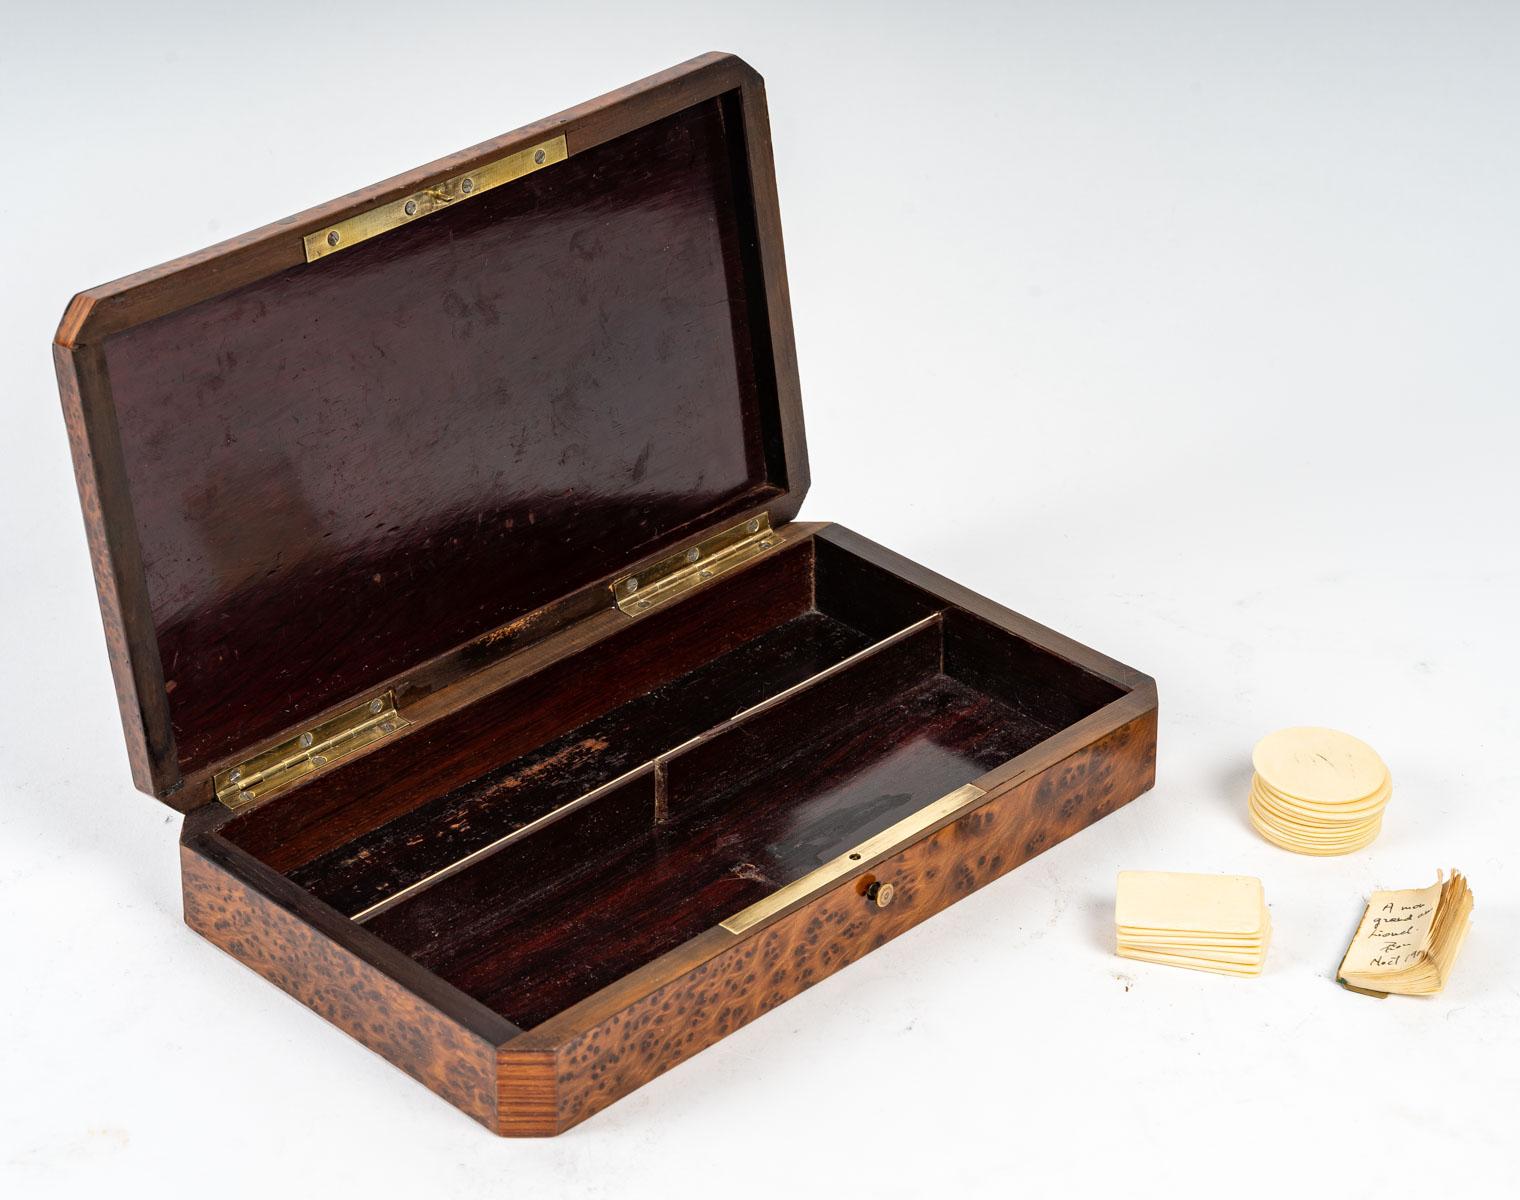 Boîte de jeu, 19ème siècle
Boîte à gibier d'époque Napoléon III, XIXe siècle en marqueterie de bois précieux.
H : 5 cm, L : 22 cm, P : 13 cm